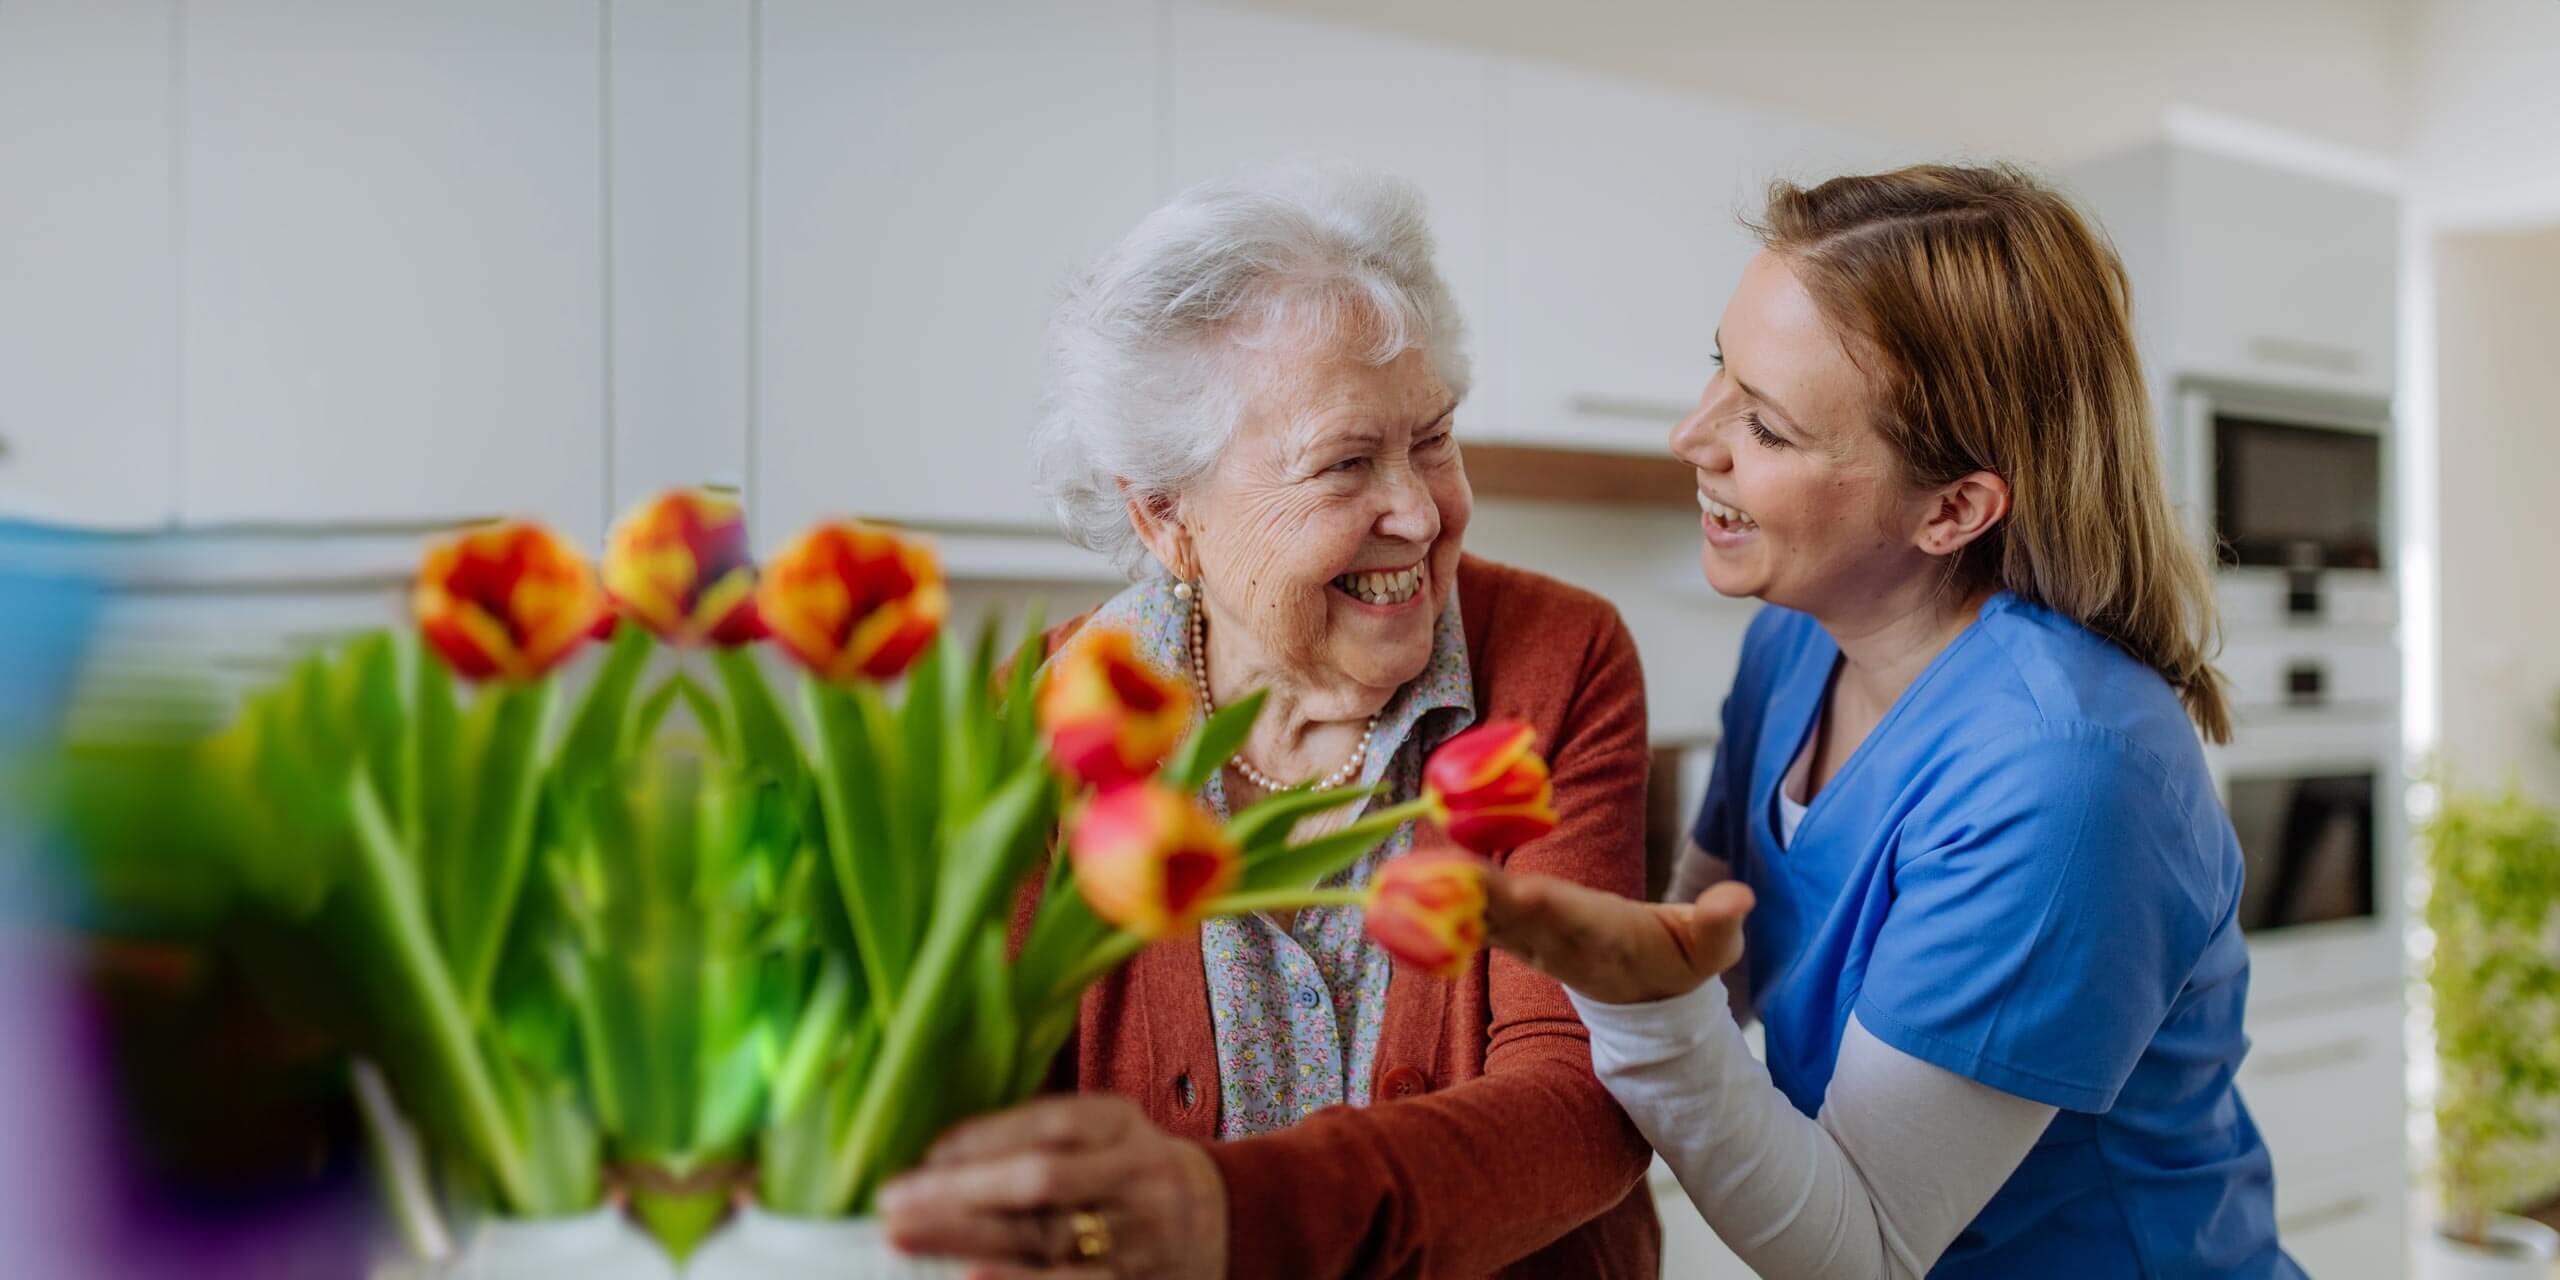 Eine fröhliche ältere Dame genießt ein nettes Gespräch mit einer jüngeren Dame, möglicherweise einer Pflegerin, in einer hellen Küche mit leuchtenden Tulpen, die der Szene einen Hauch von Wärme verleihen.